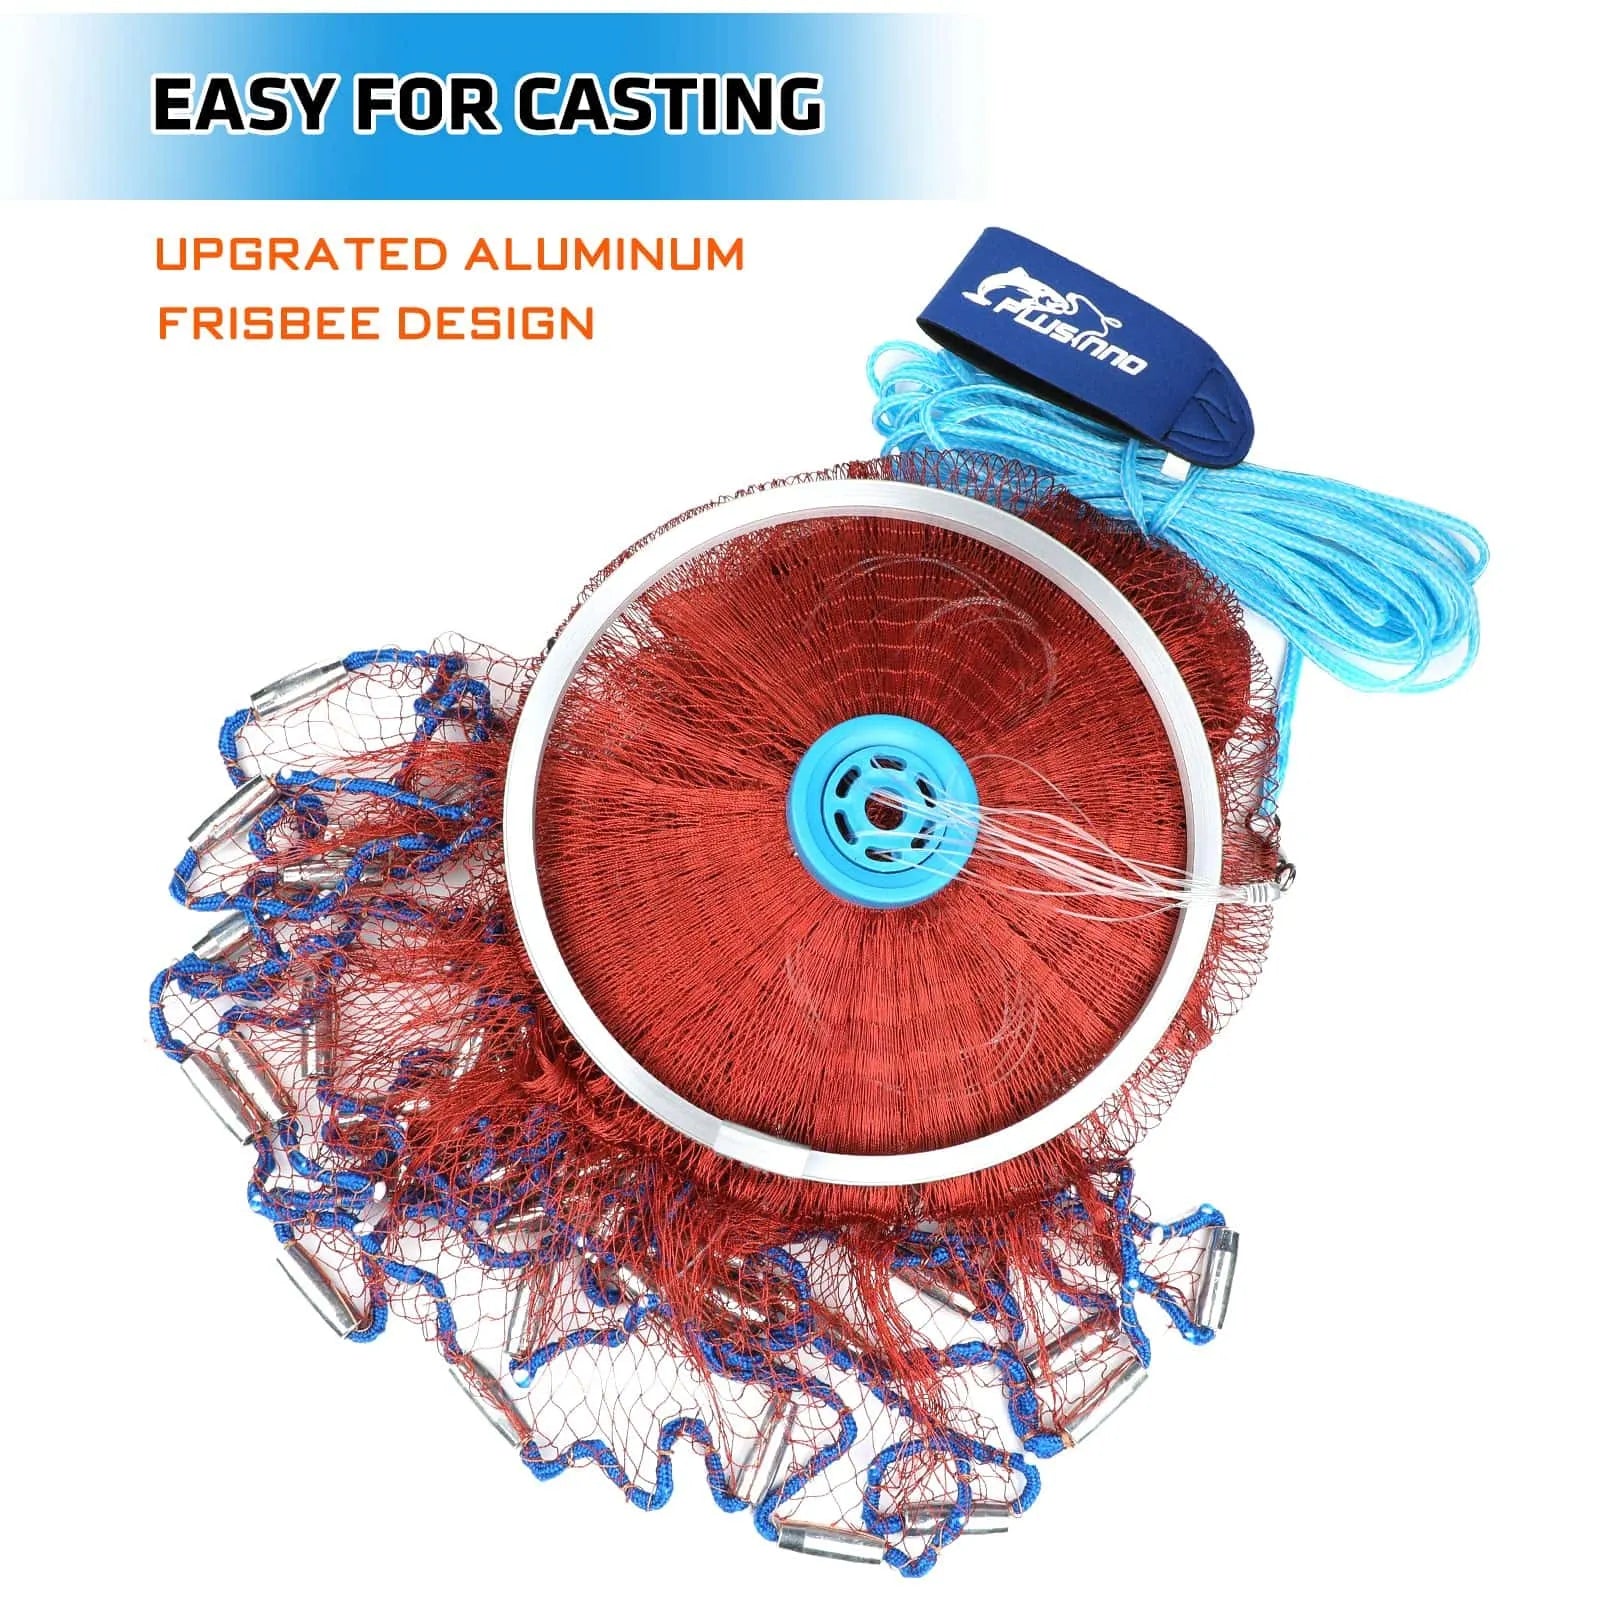 PLUSINNO Cast Net con frisbee de aluminio